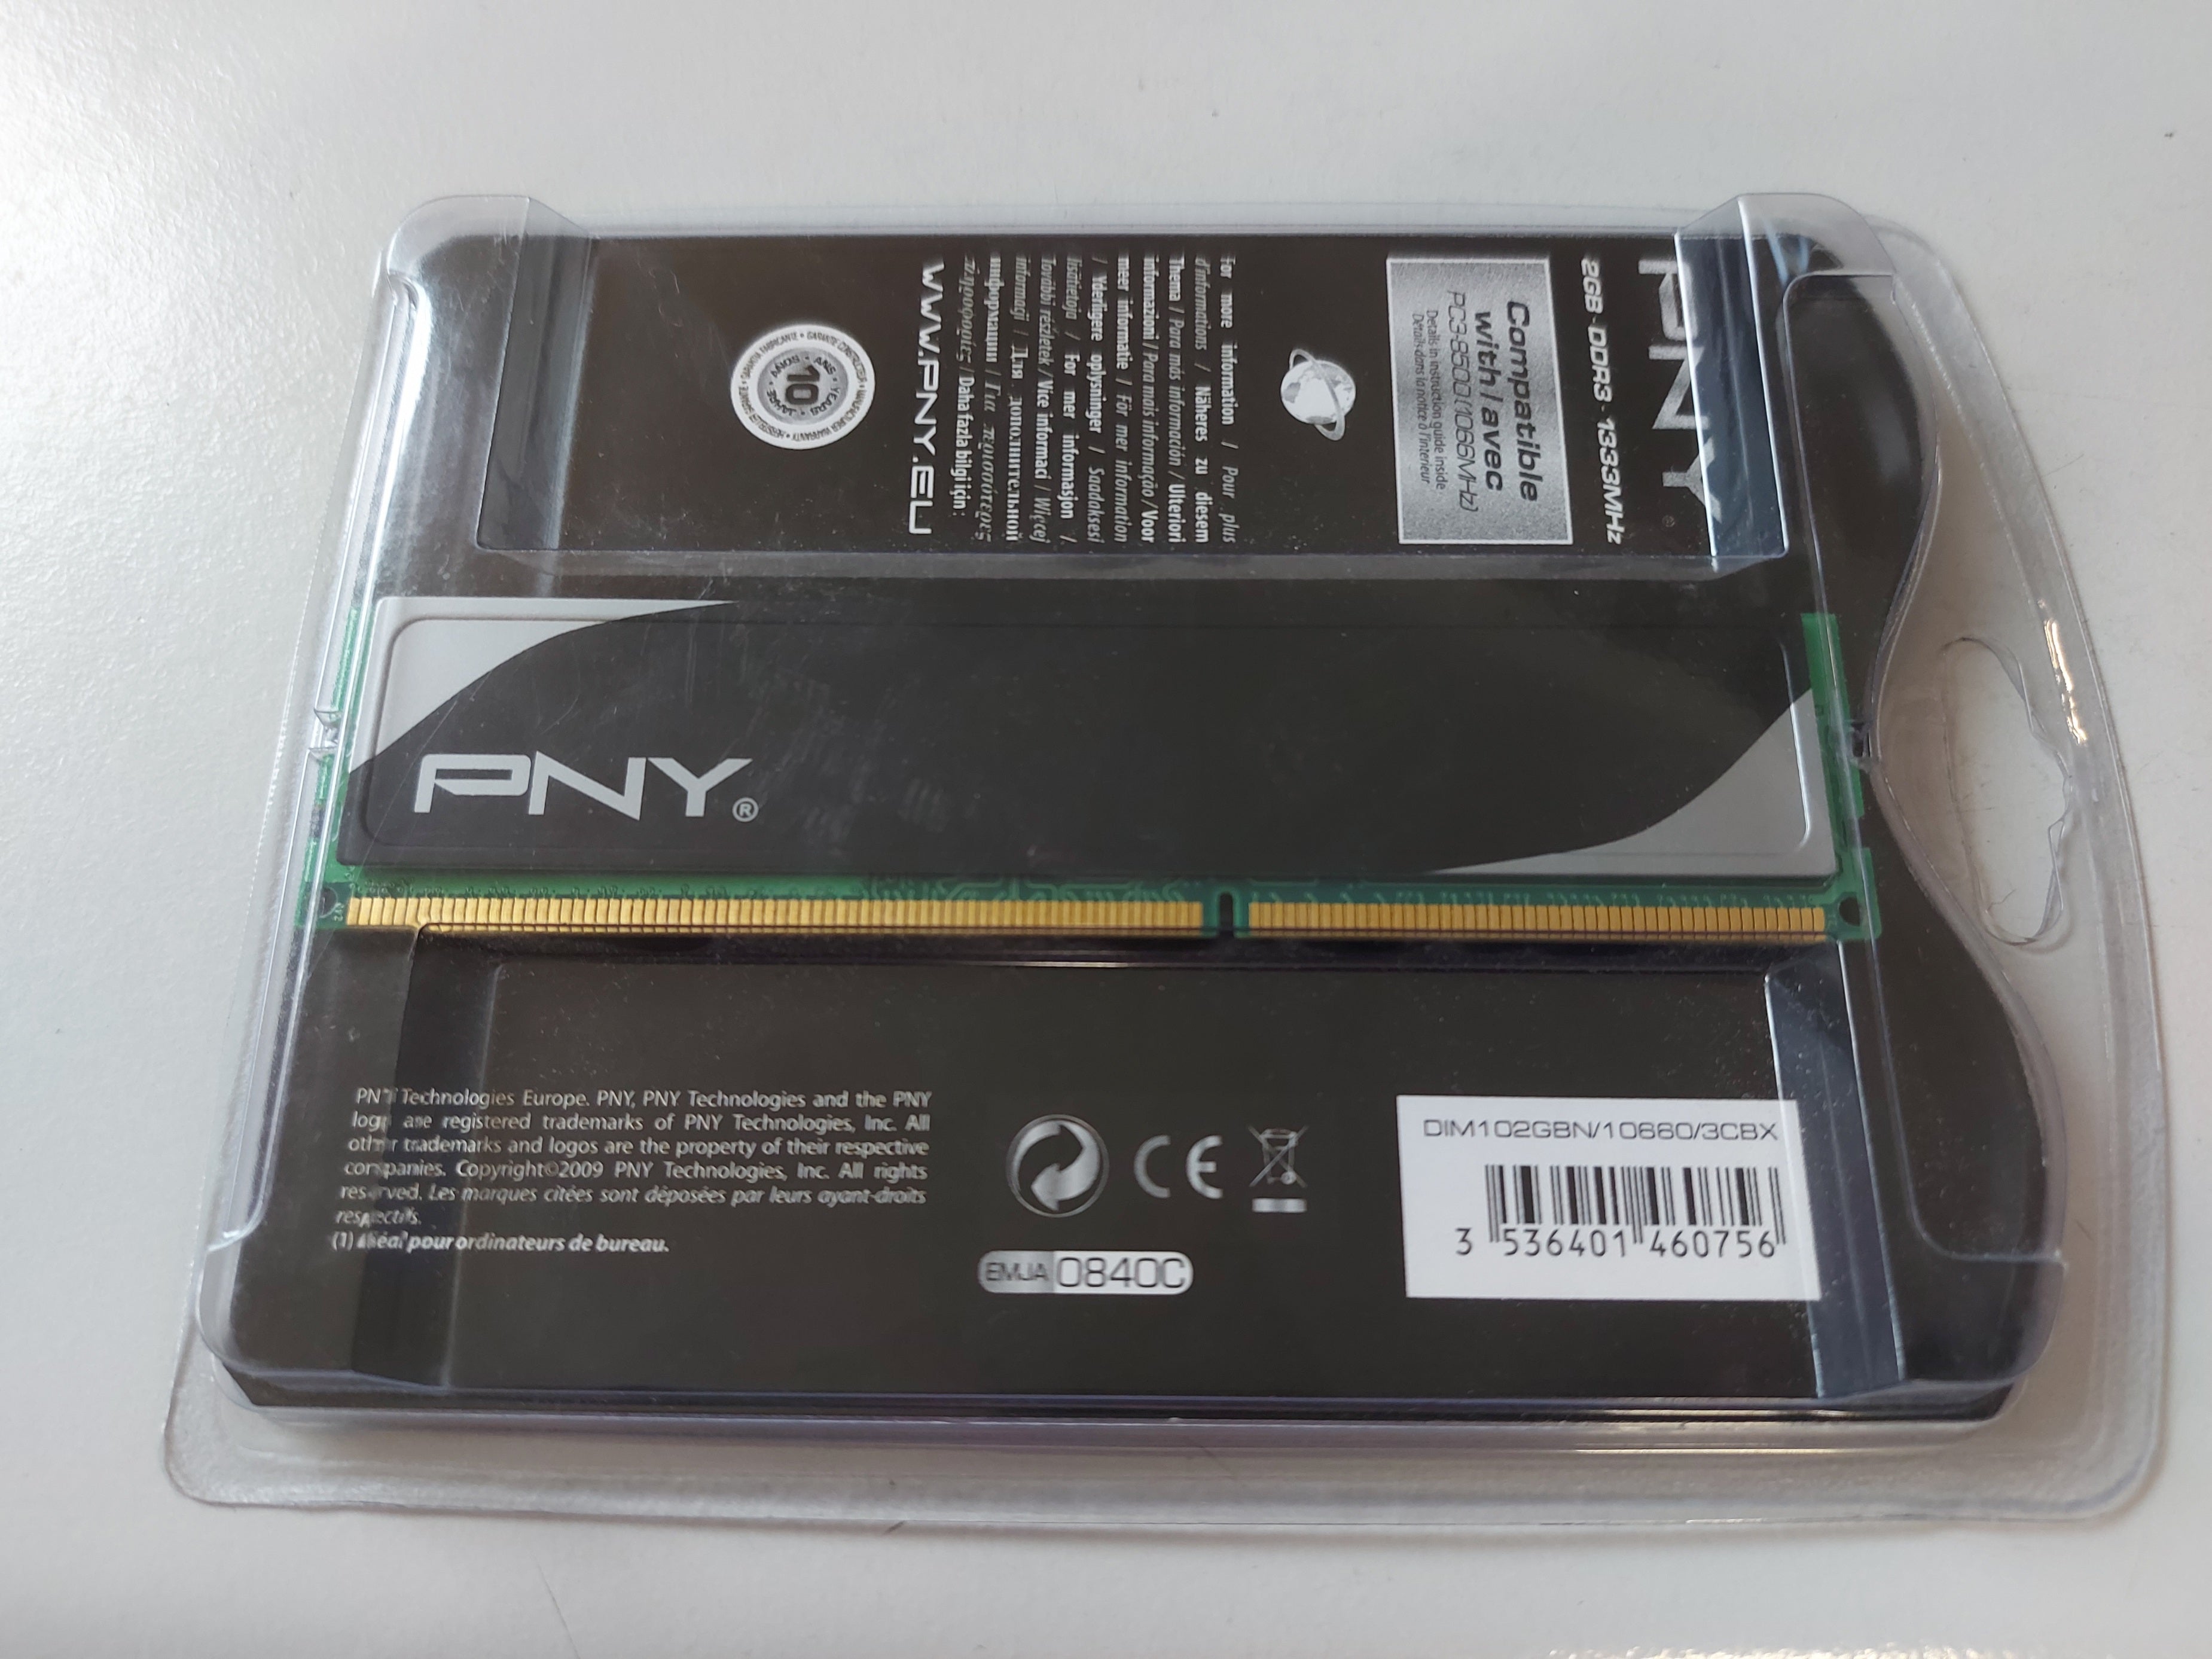 PNY 2GB DDR3 Non ECC PC3-10600 1333Mhz 2Rx8 Memory ( DIM102GBN/10660/3CBX ) NEW